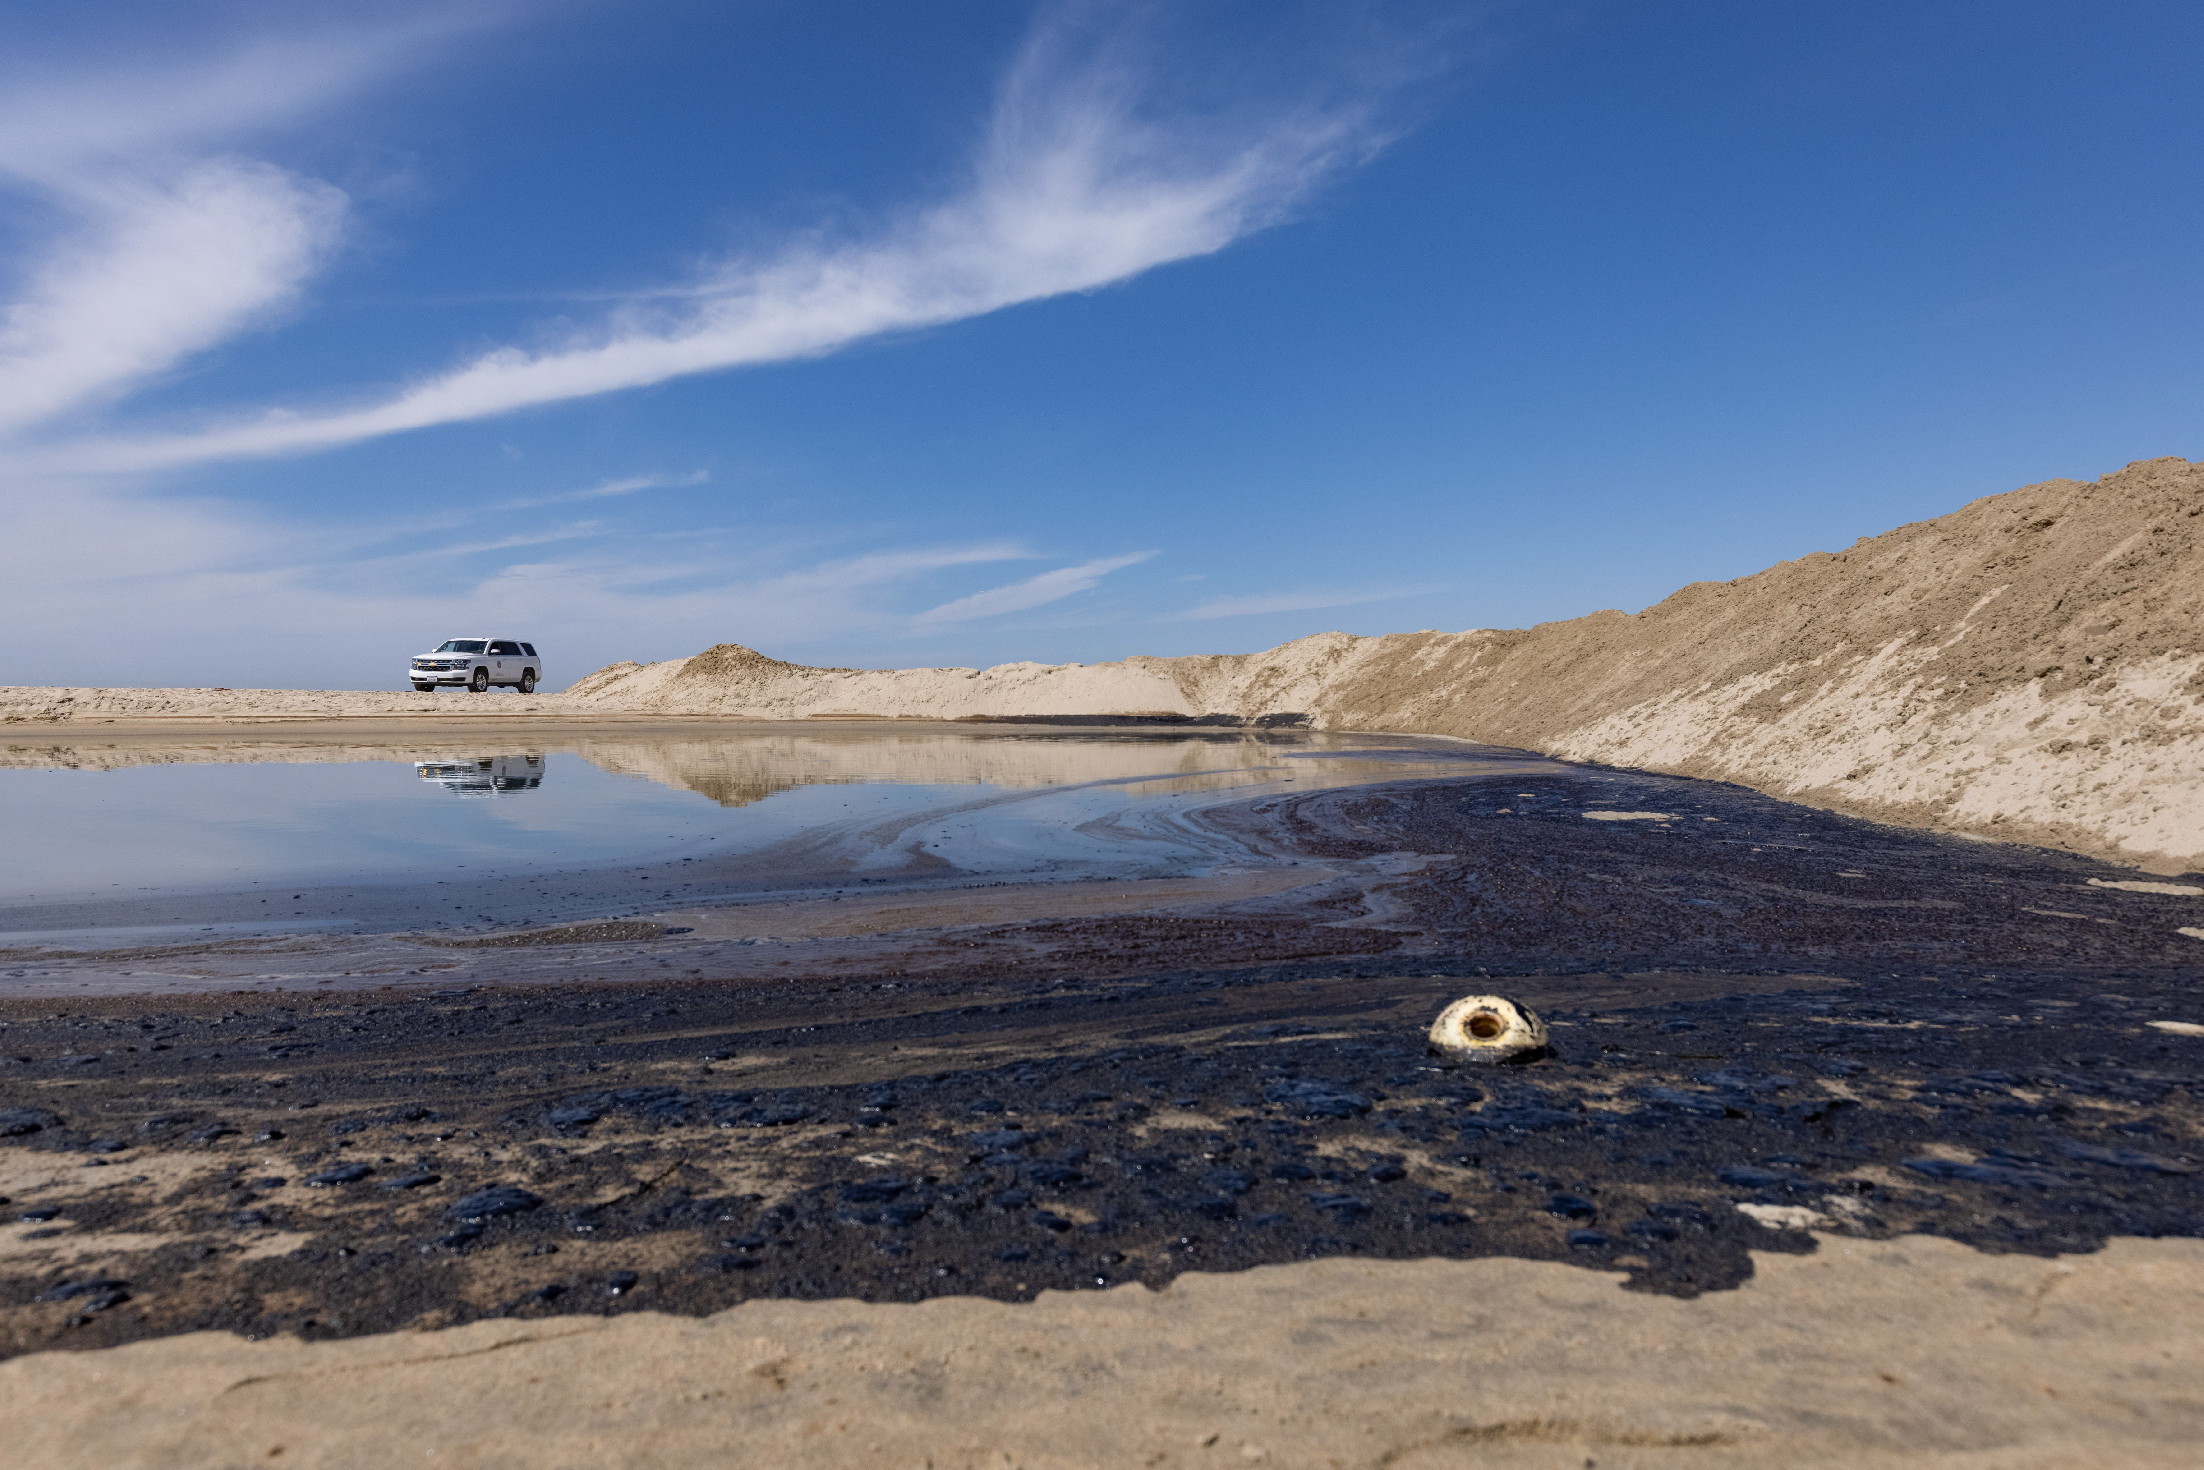 Kaliforniai olajszennyezés: vastagon áll a kátrány az óceánon